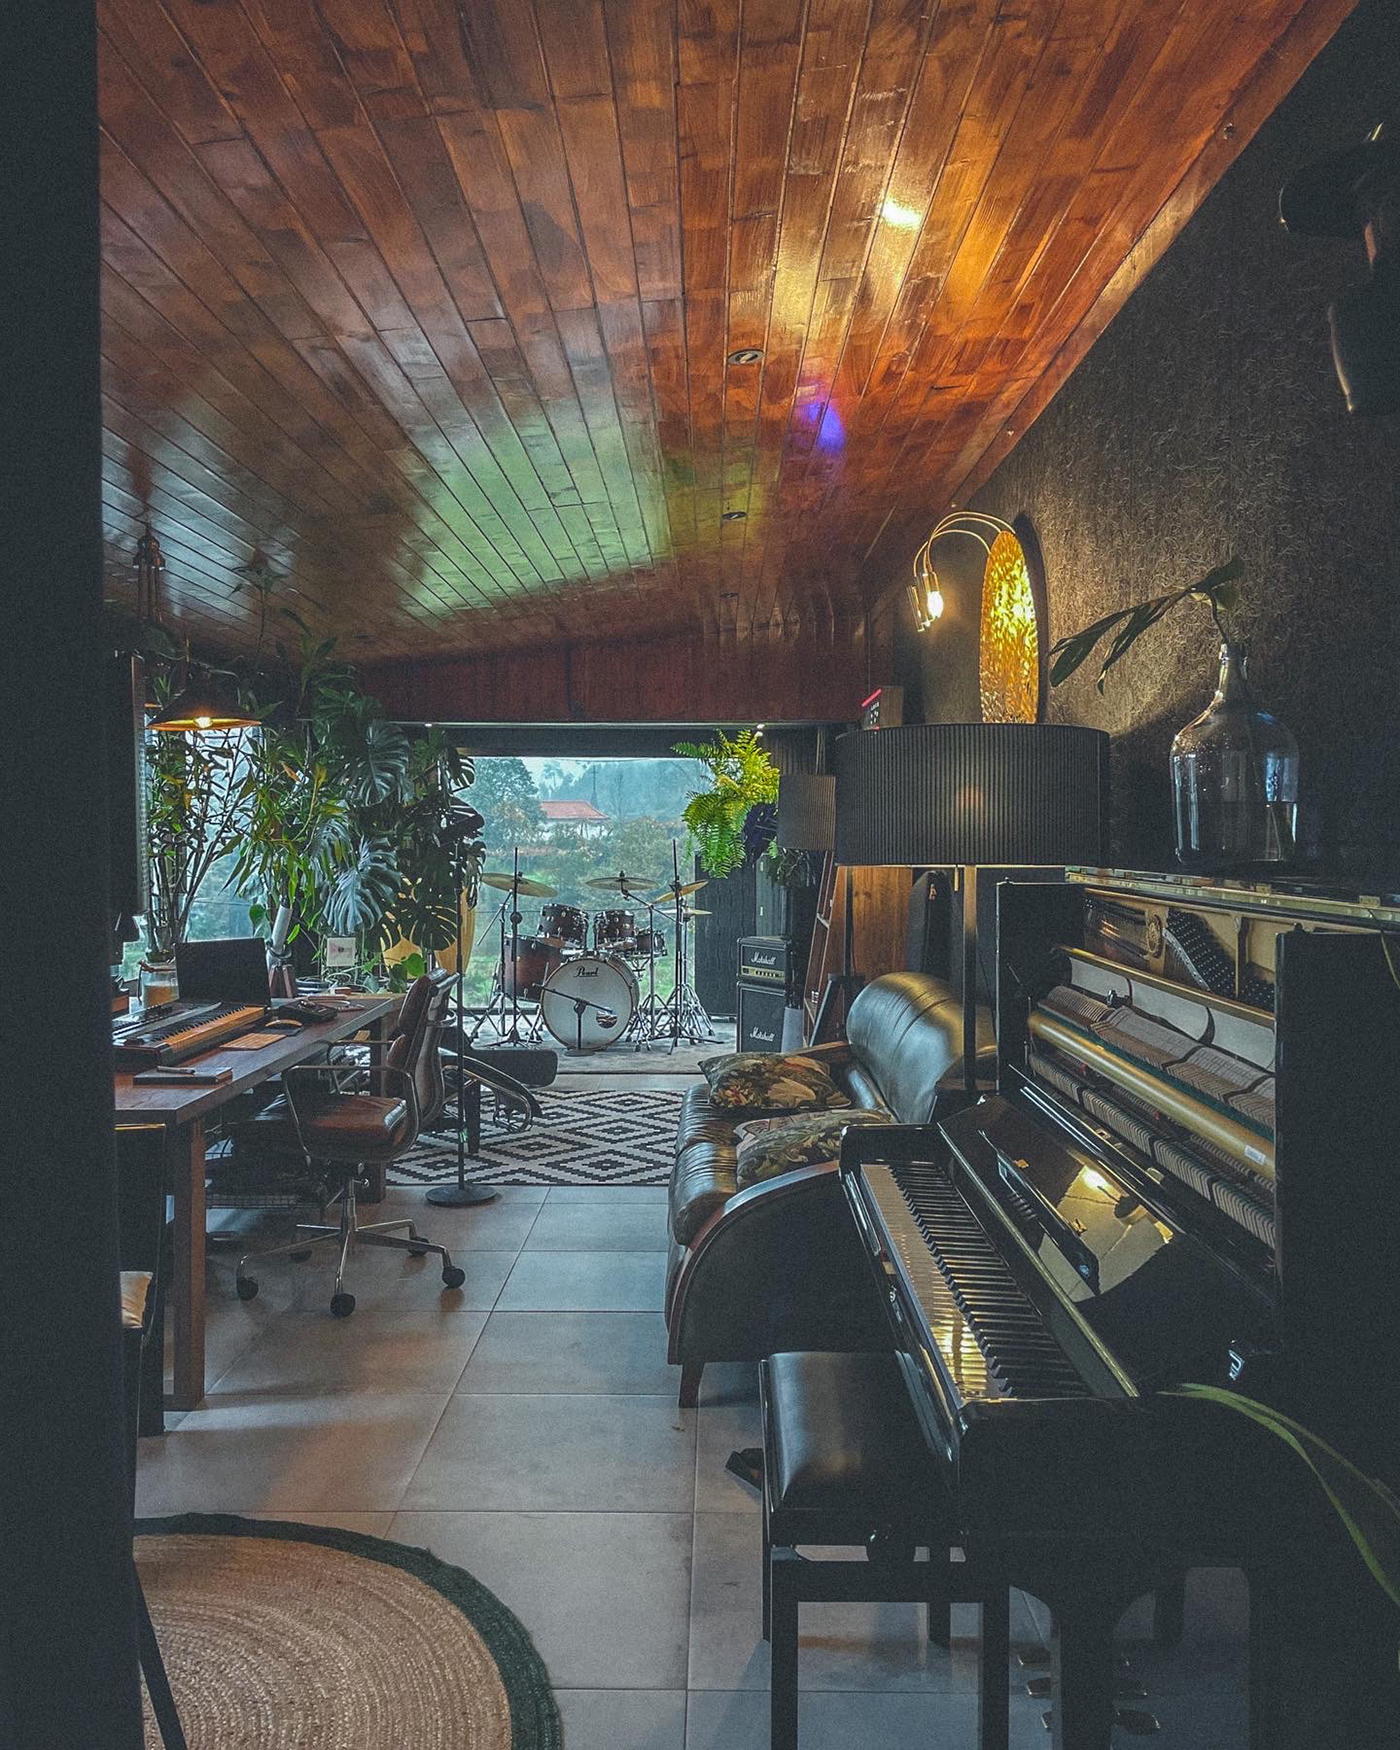 Audio Decoração industrial interior design  music photo Piano plants stuidio wood